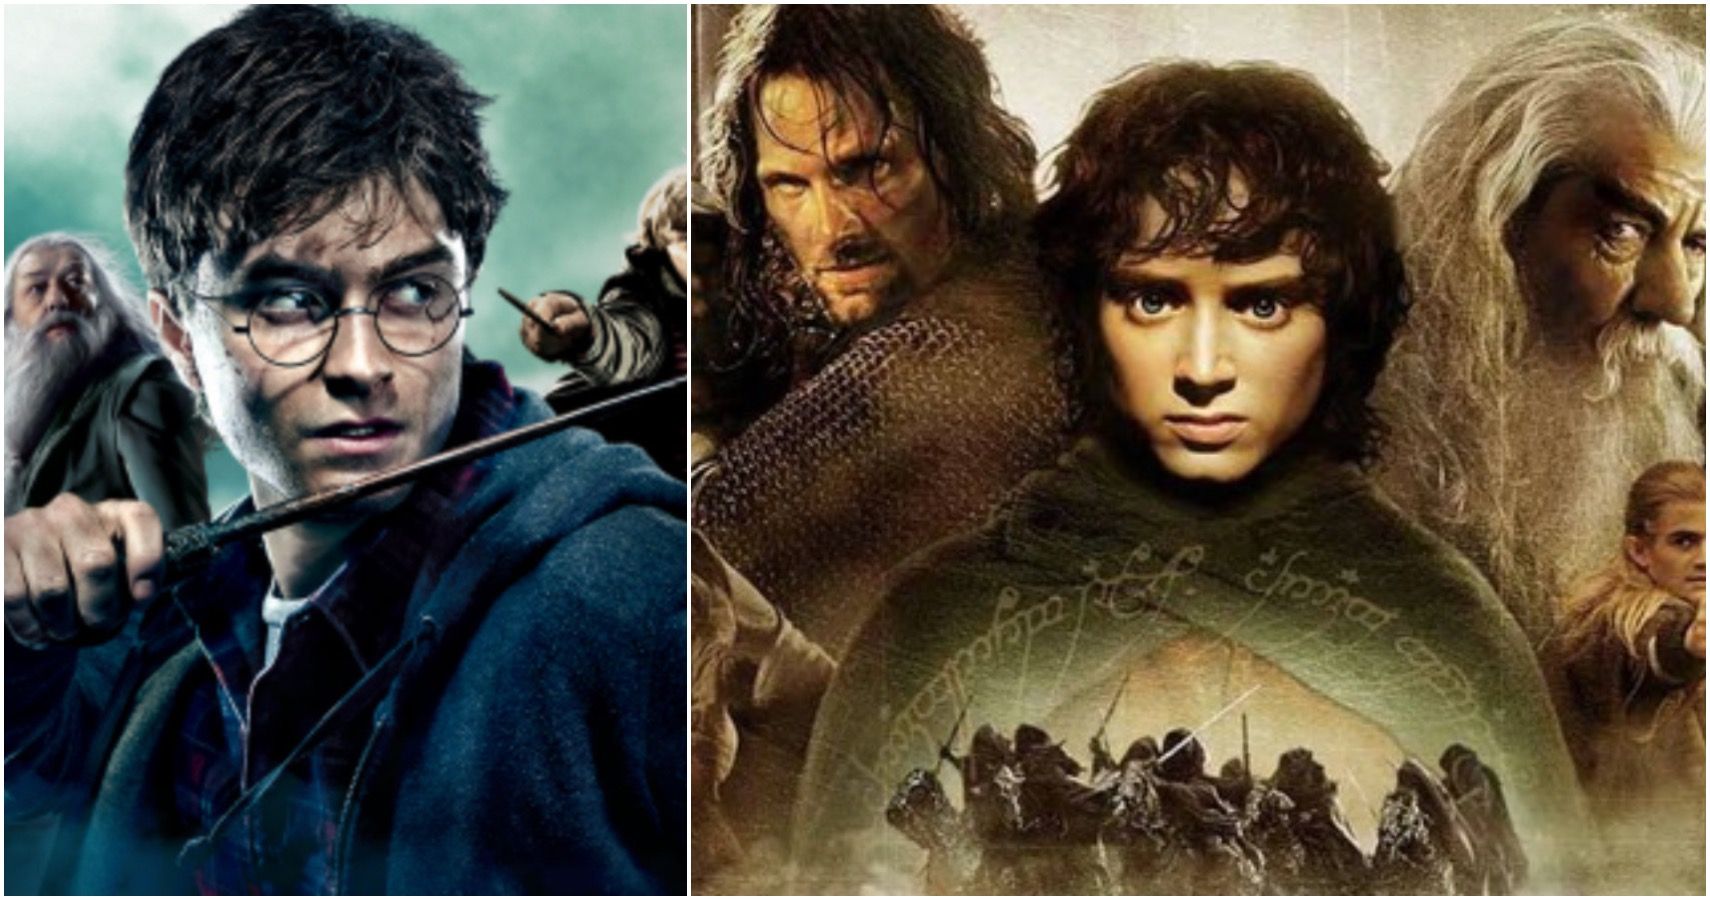 Harry Potter: ¿Qué varita tendrían los personajes de El señor de los anillos?